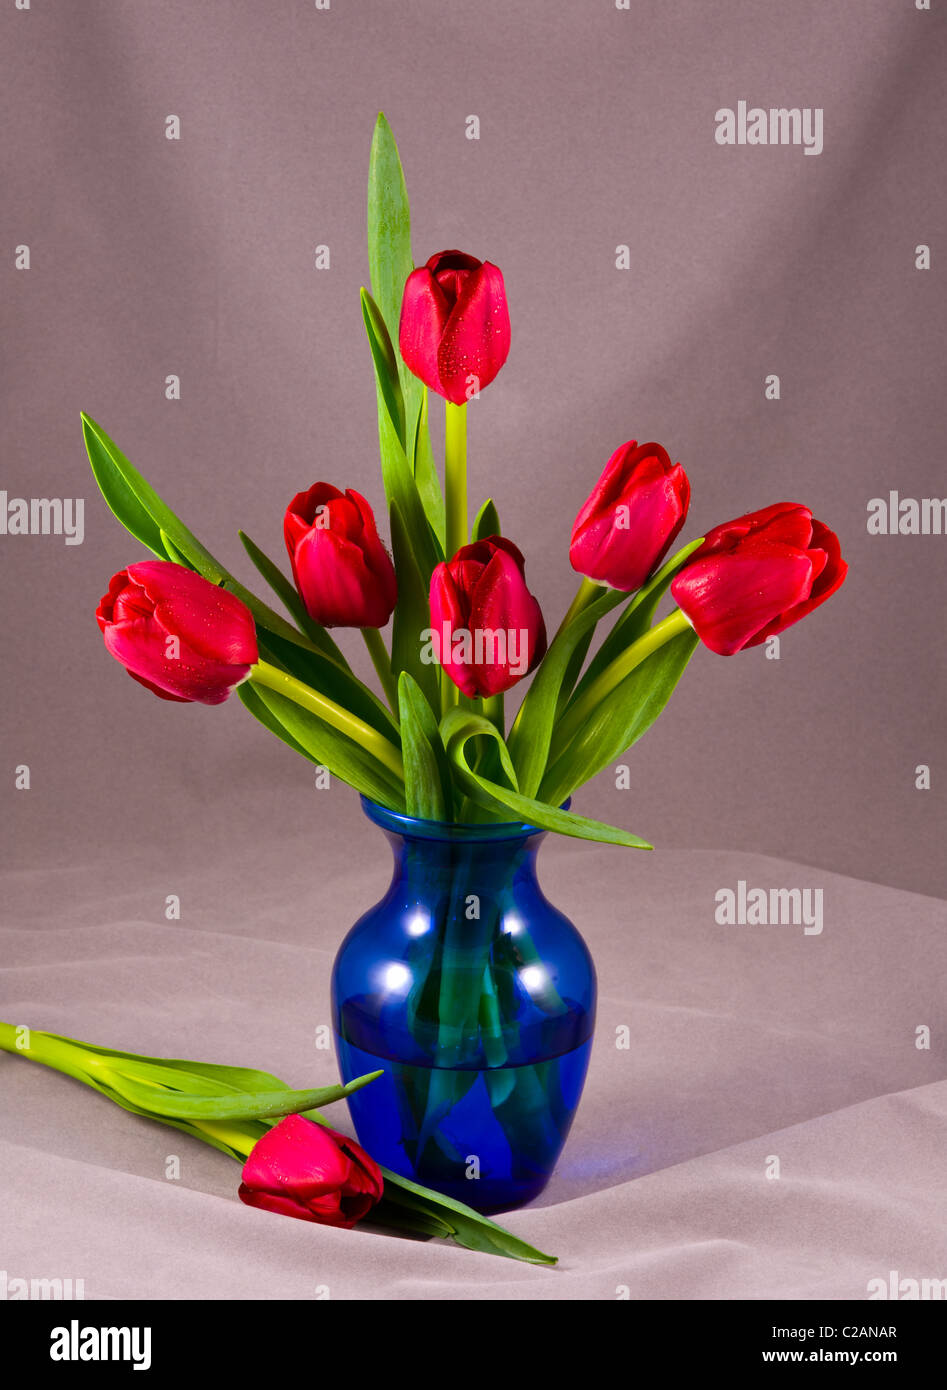 Tulipes rouges dans un vase bleu gouttes de rosée de l'eau brume composition fleurs arrangement still life table top set-up floral charmant cut out Banque D'Images